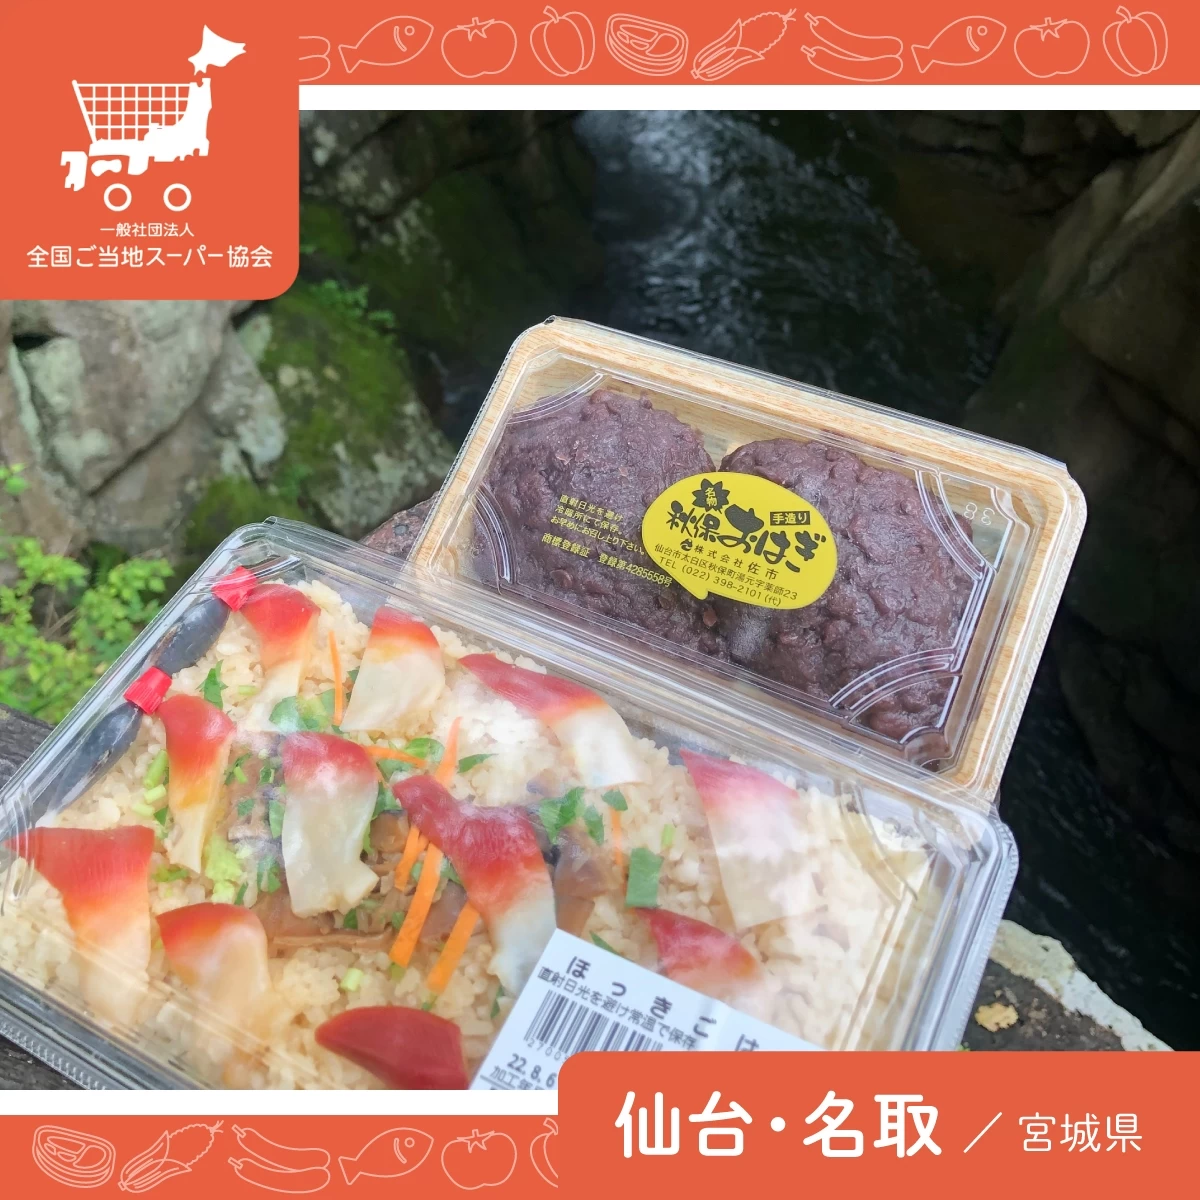 仙台旅行で秋保温泉へ。伝説のおはぎや海鮮丼など名物グルメ巡り